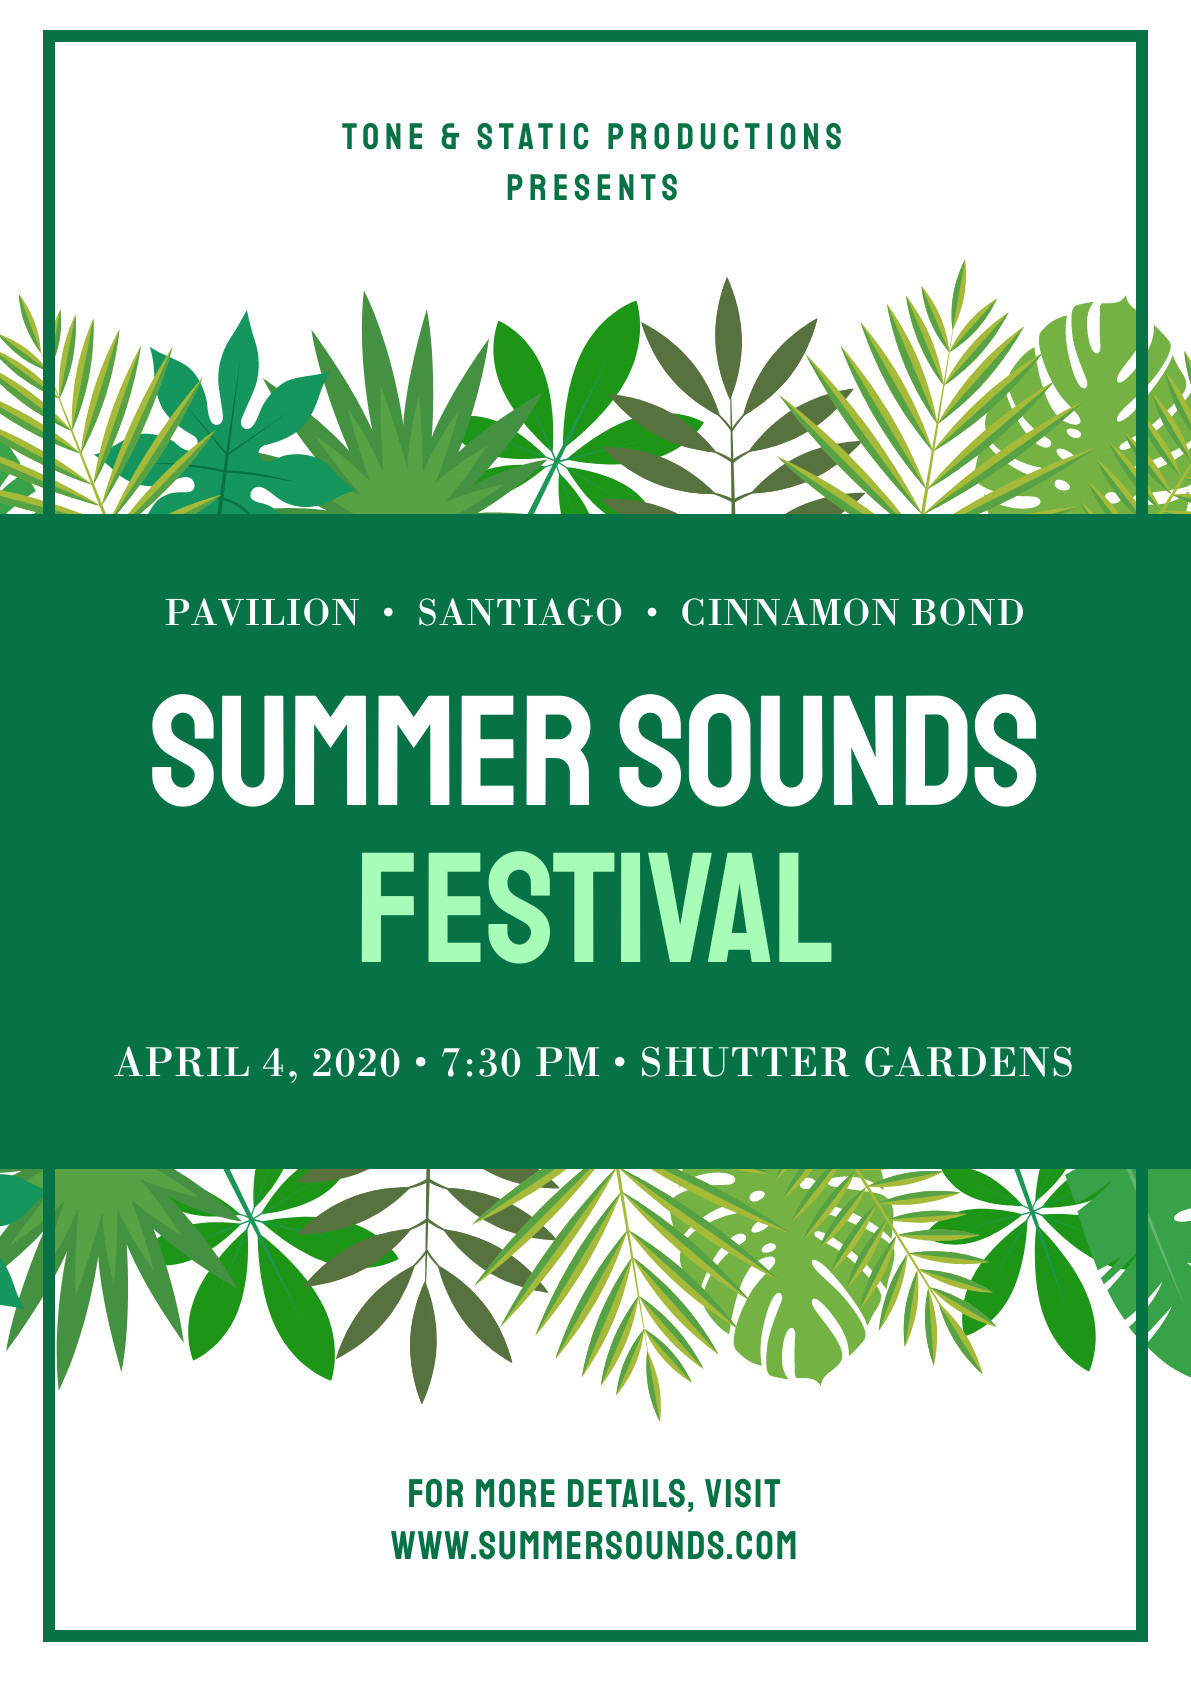 Summer Sounds Green Festival – Poster Template 1191x1684